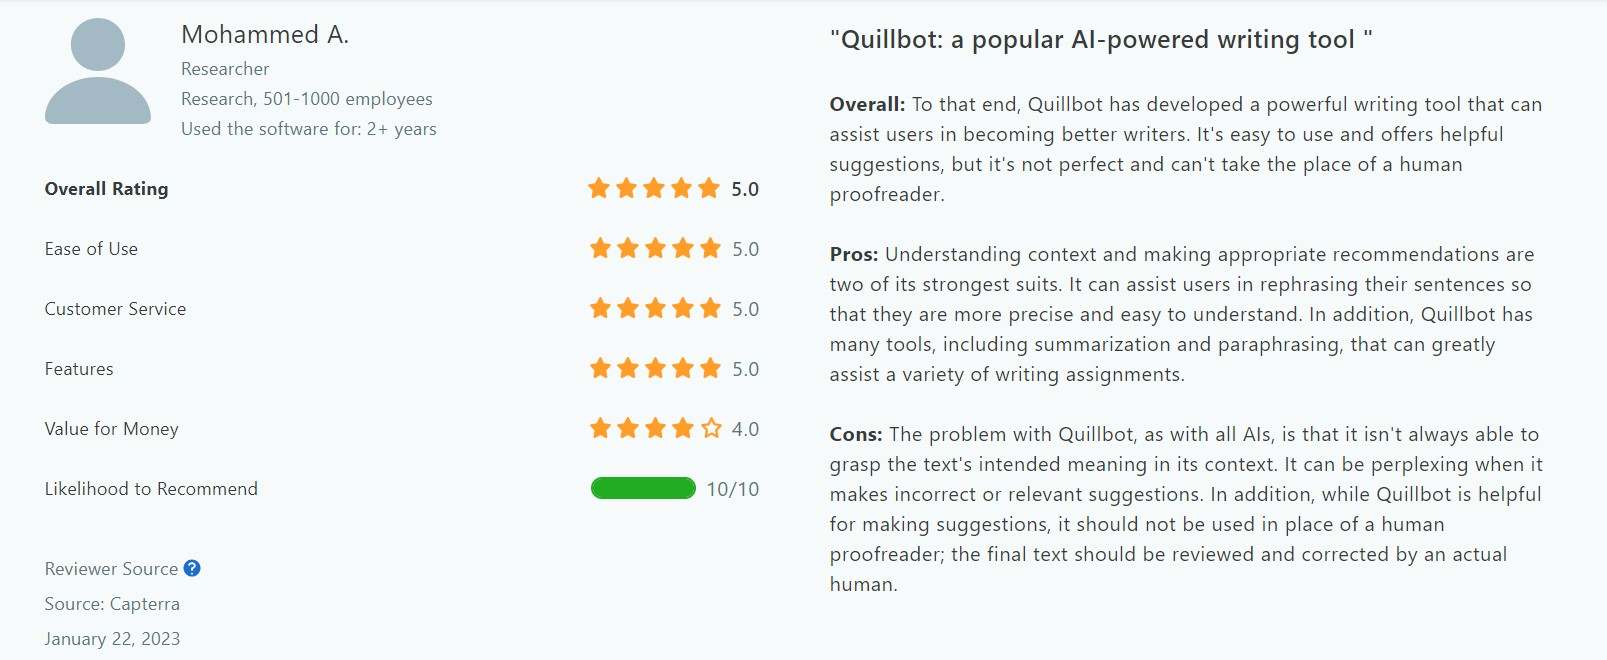 Quillbot-Benutzerfeedback von einem Forscher